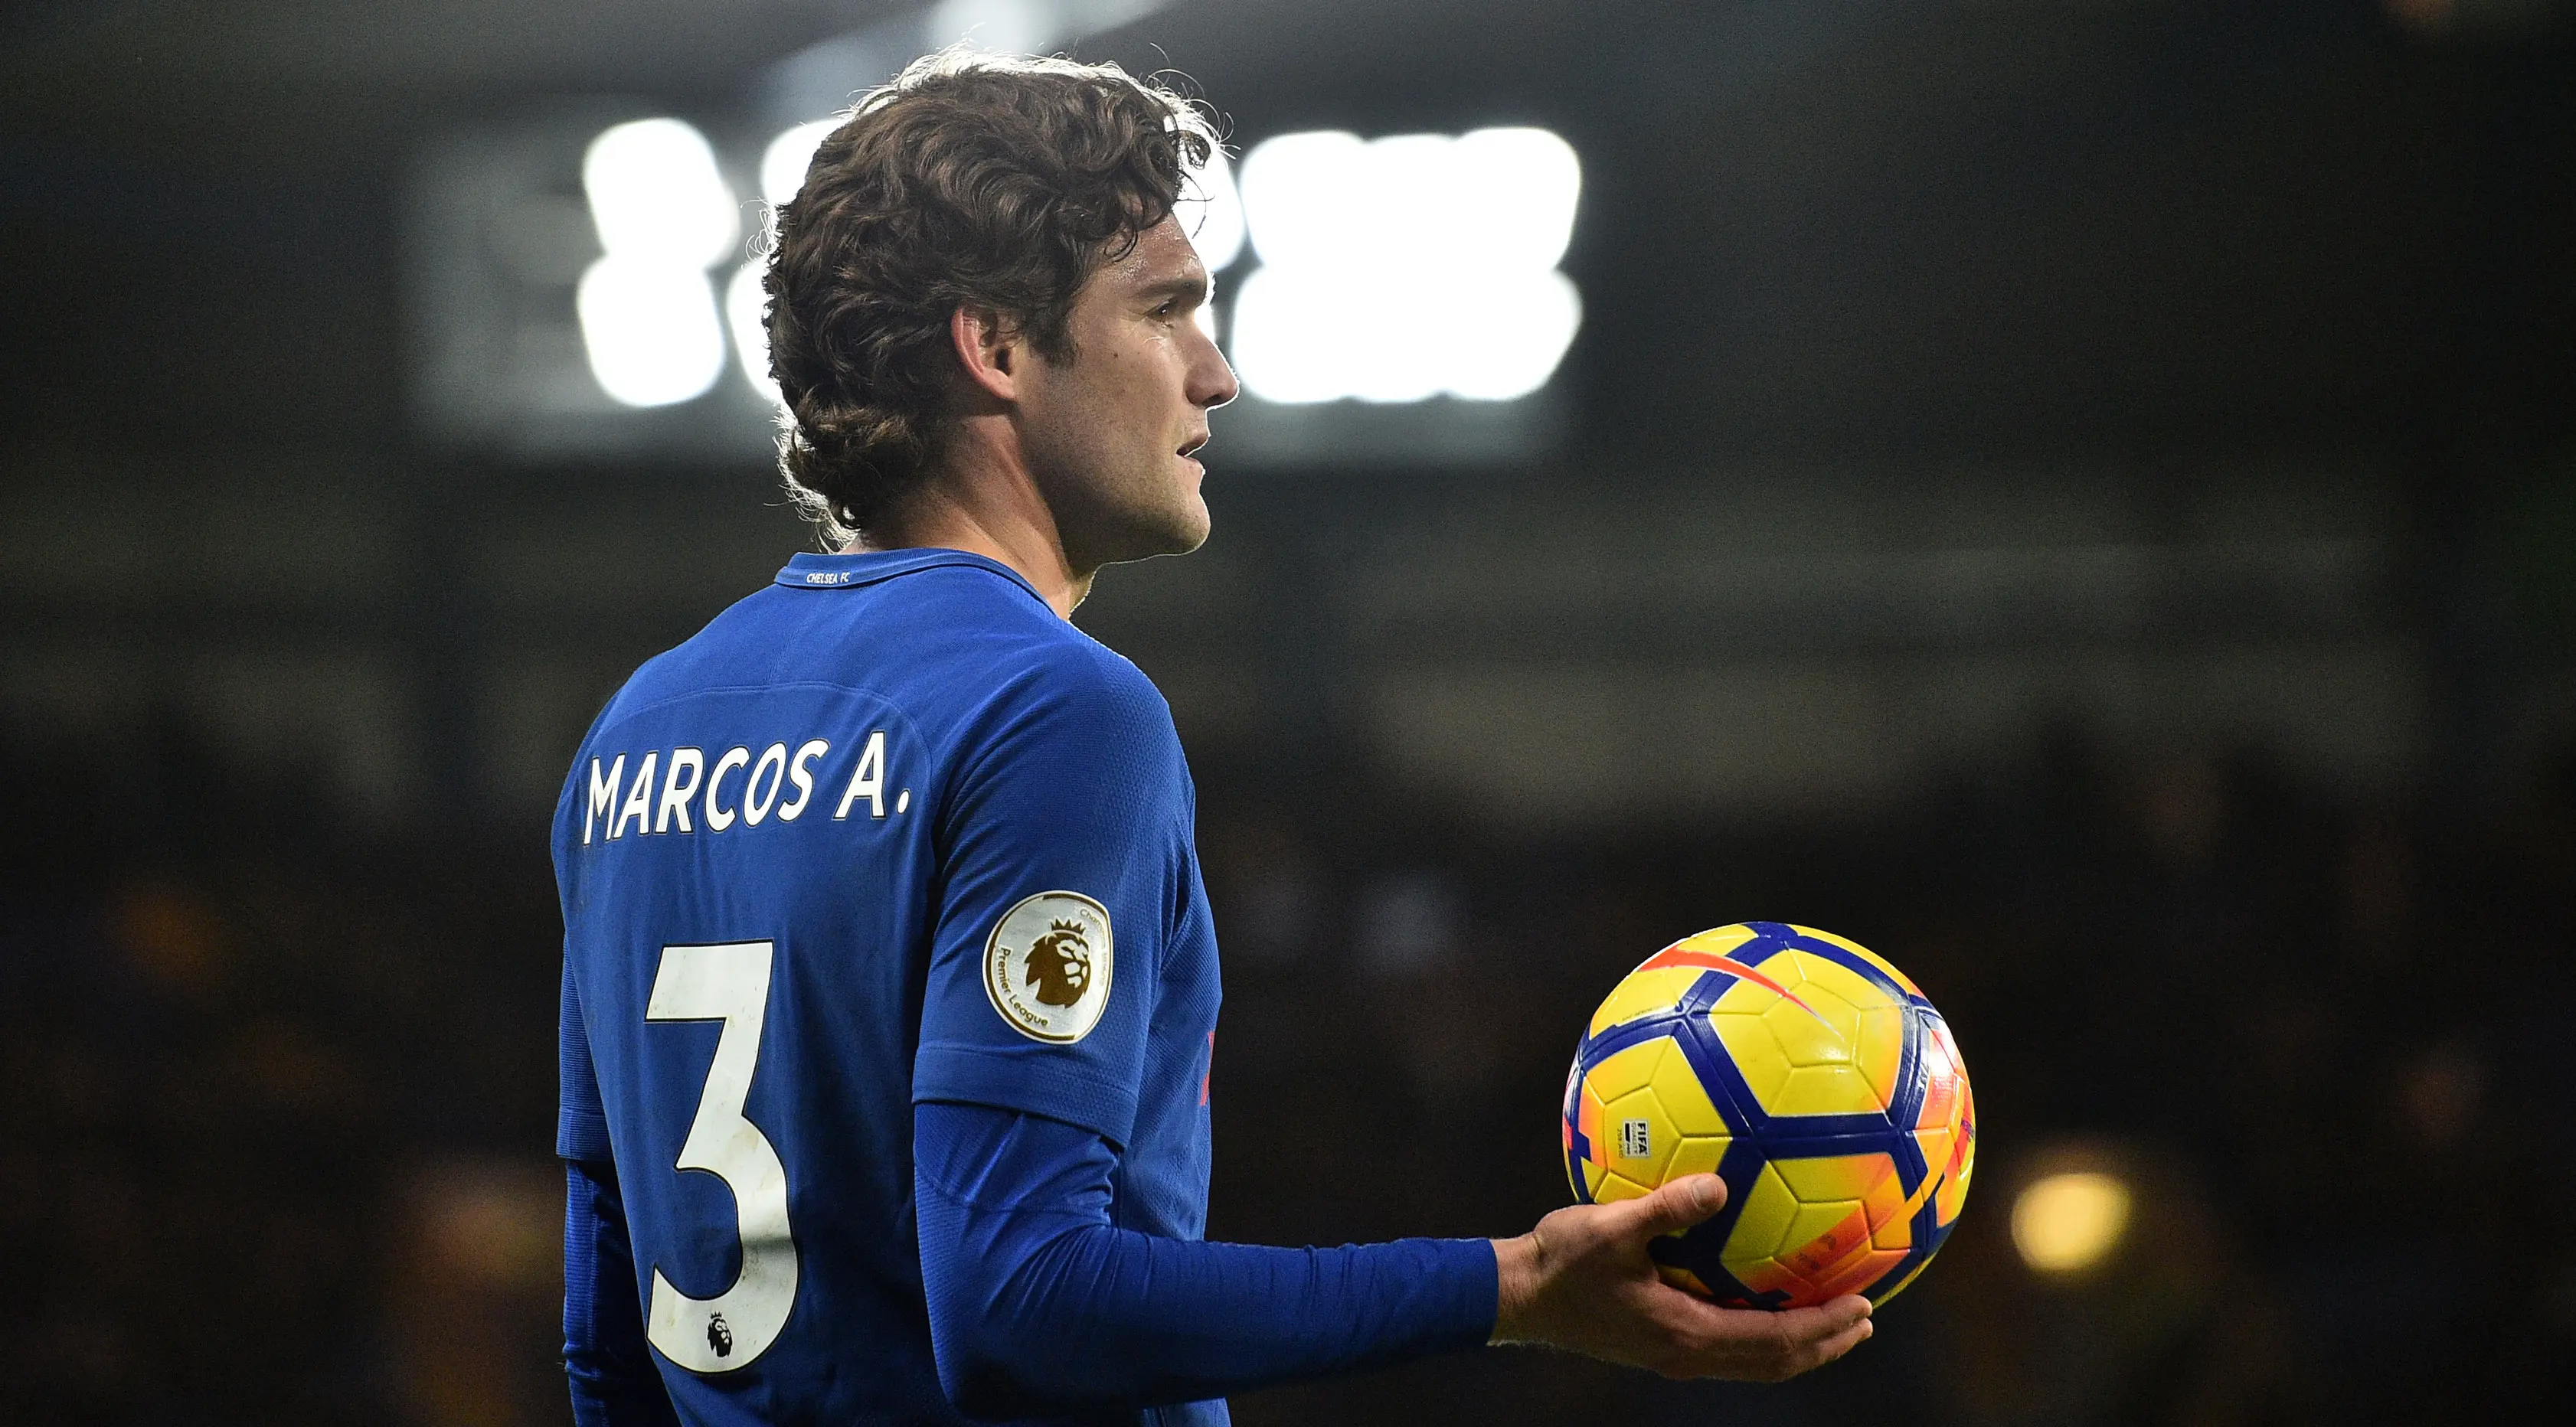 Pemain Chelsea, Marcos Alonso, memberikan isyarat saat menjamu Bournemouth pada laga pekan ke-25 Premier League 2017-2018 di Stamford Bridge, Rabu (31/1). Chelsea menderita kekalahan telak 0-3 dari tamunya Bournemouth. (Glyn KIRK/AFP)